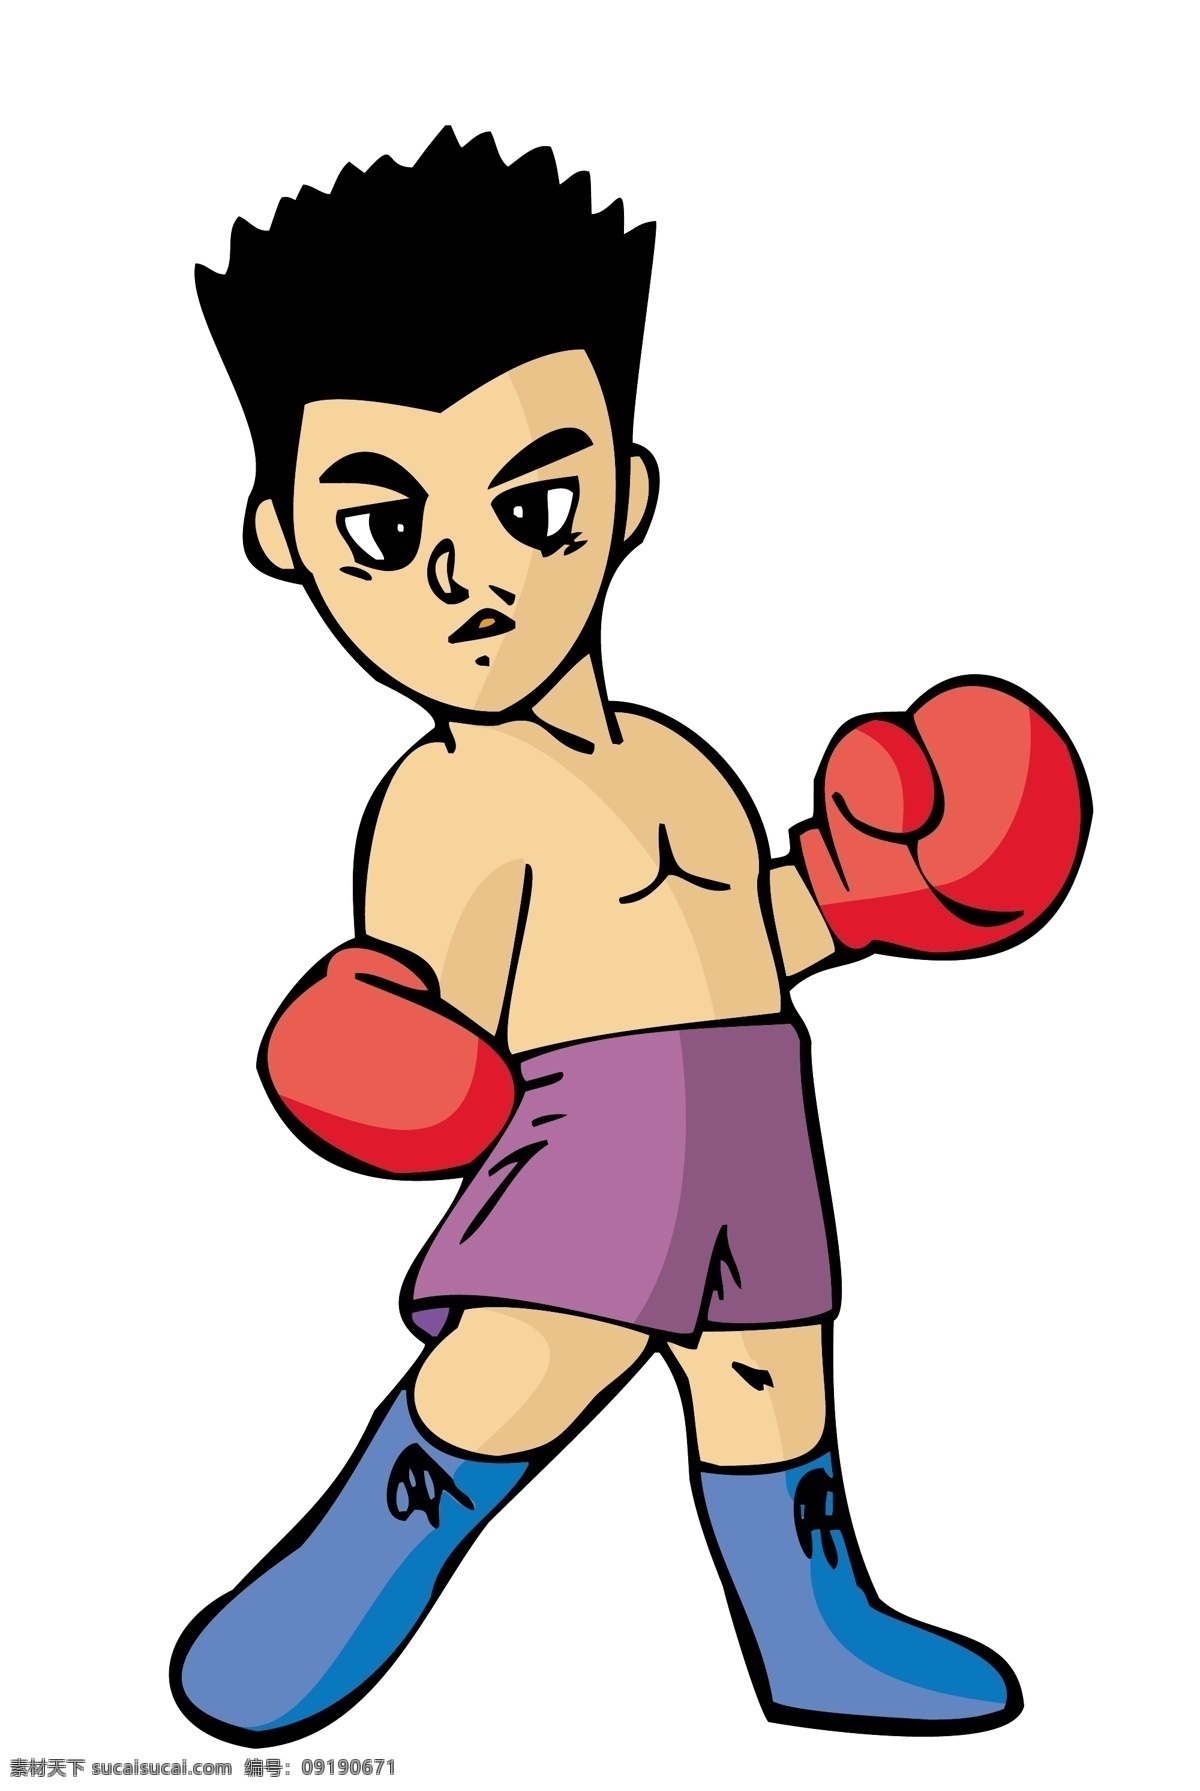 男孩 拳击 可爱 卡通 运动员 矢量 模板下载 卡通运动员 人物 大全 日常生活 矢量人物